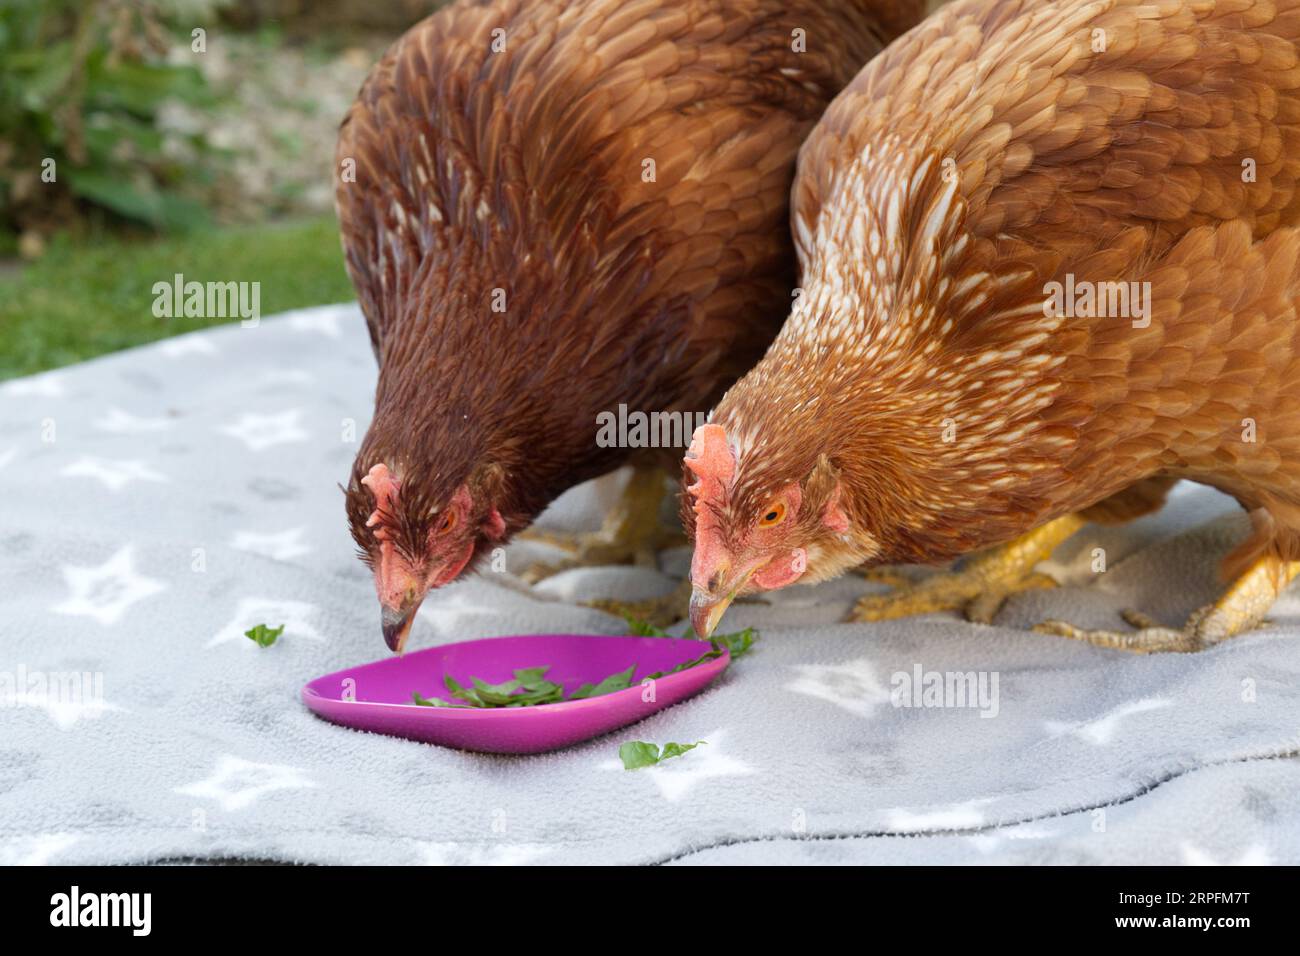 Pet hens exploring a garden Stock Photo